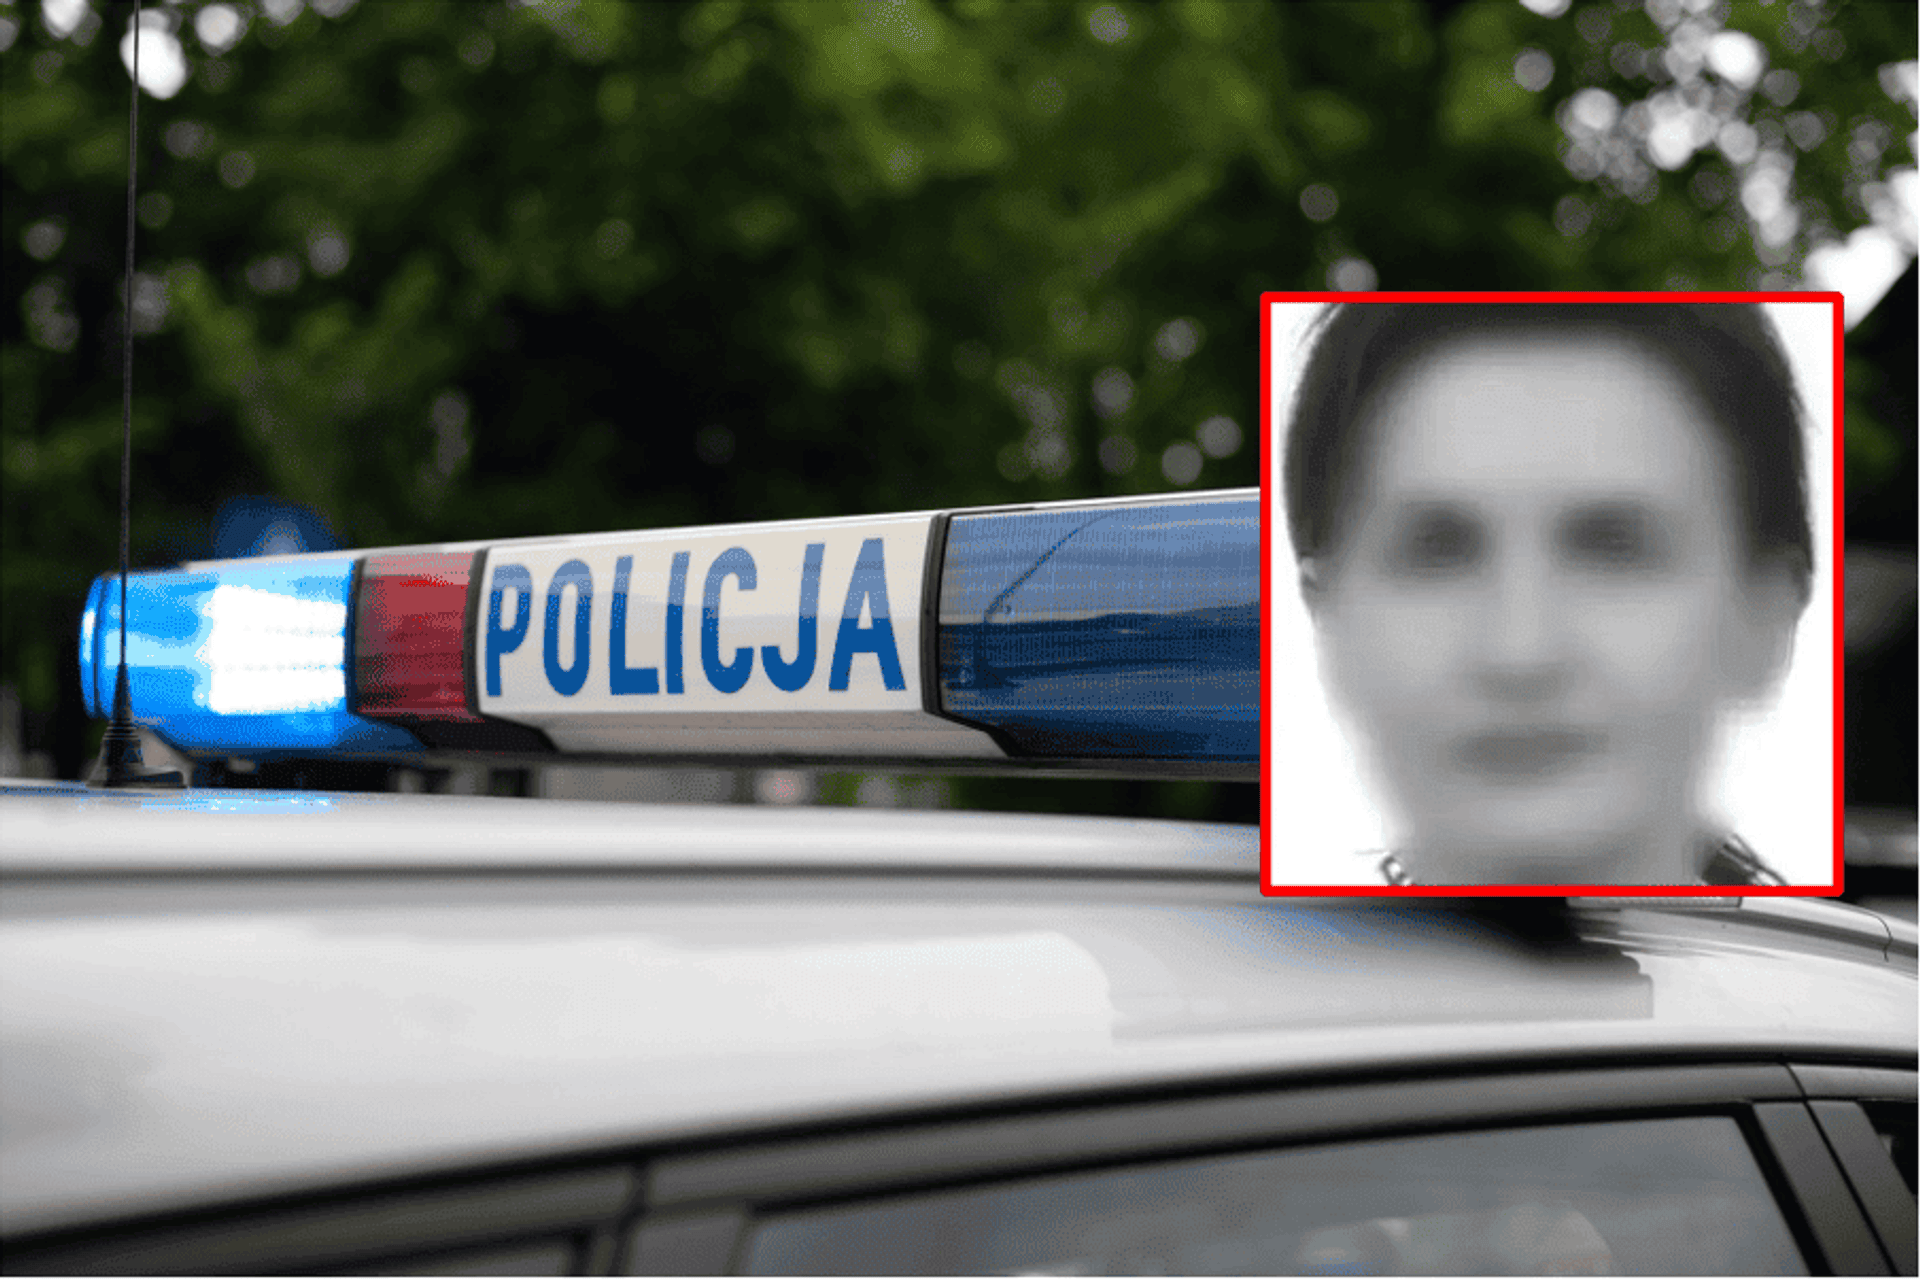 Śląska Policja, Pixabay/AndrzejRembowski